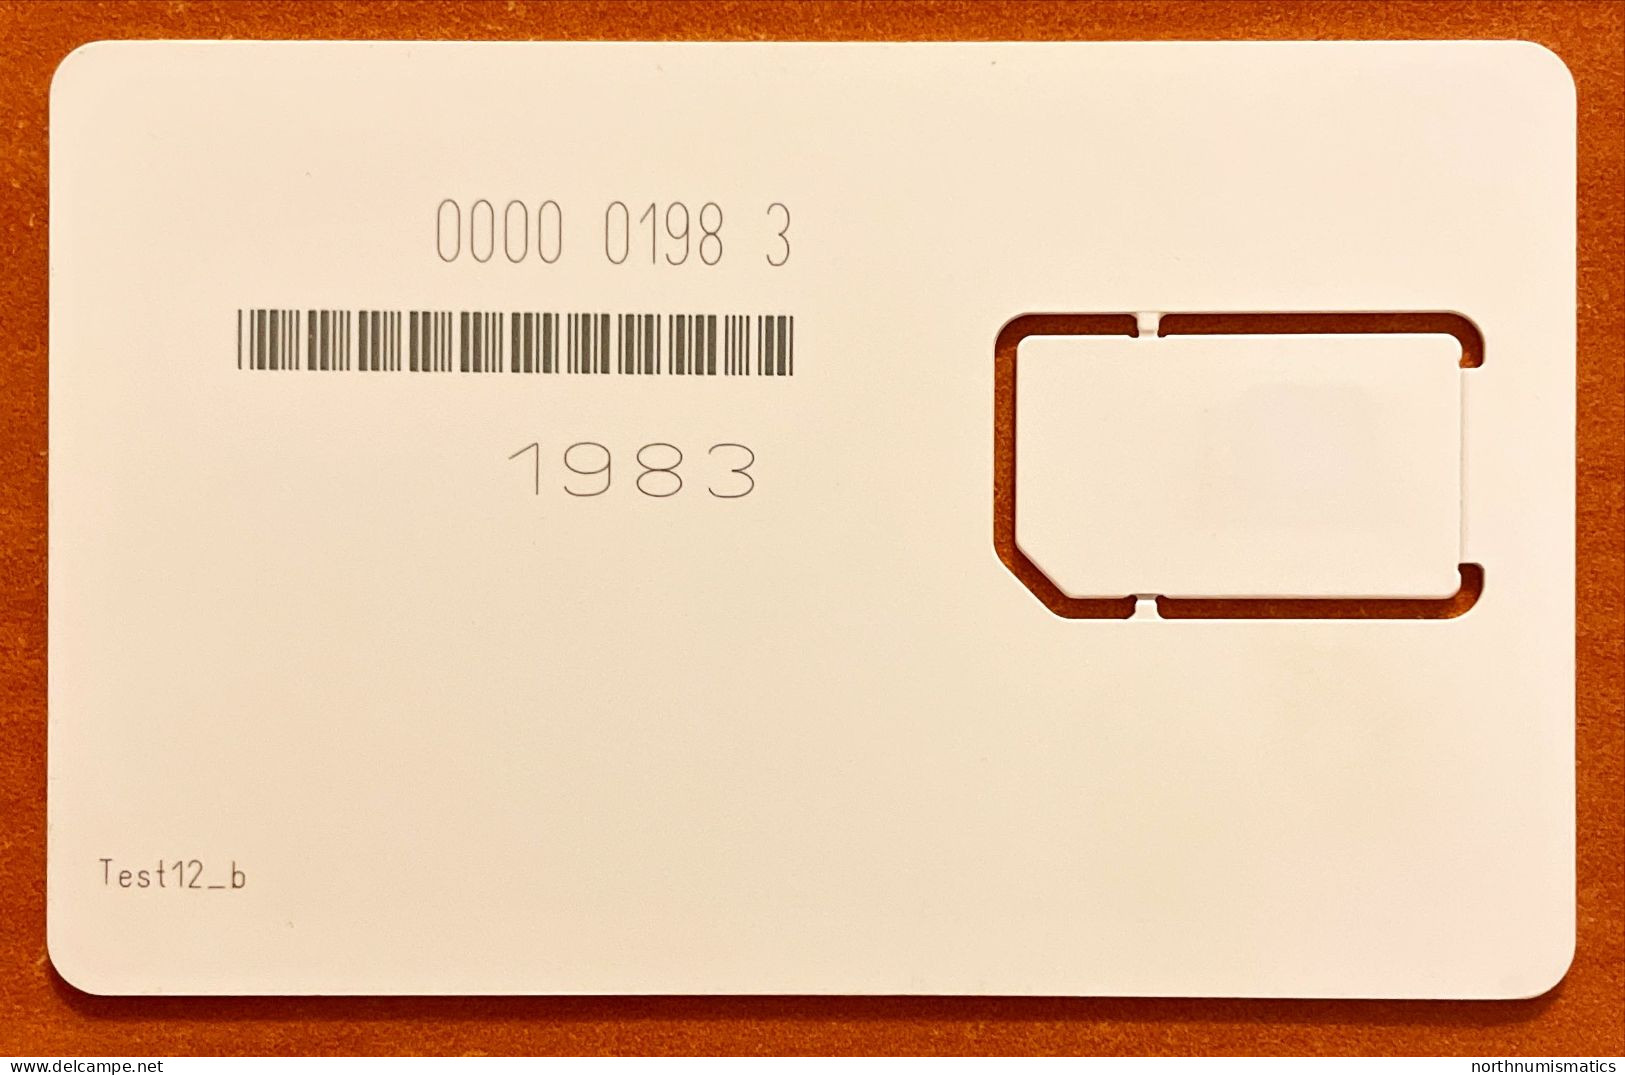 Gsm  Original Chip Sim Card Test12-b - Colecciones